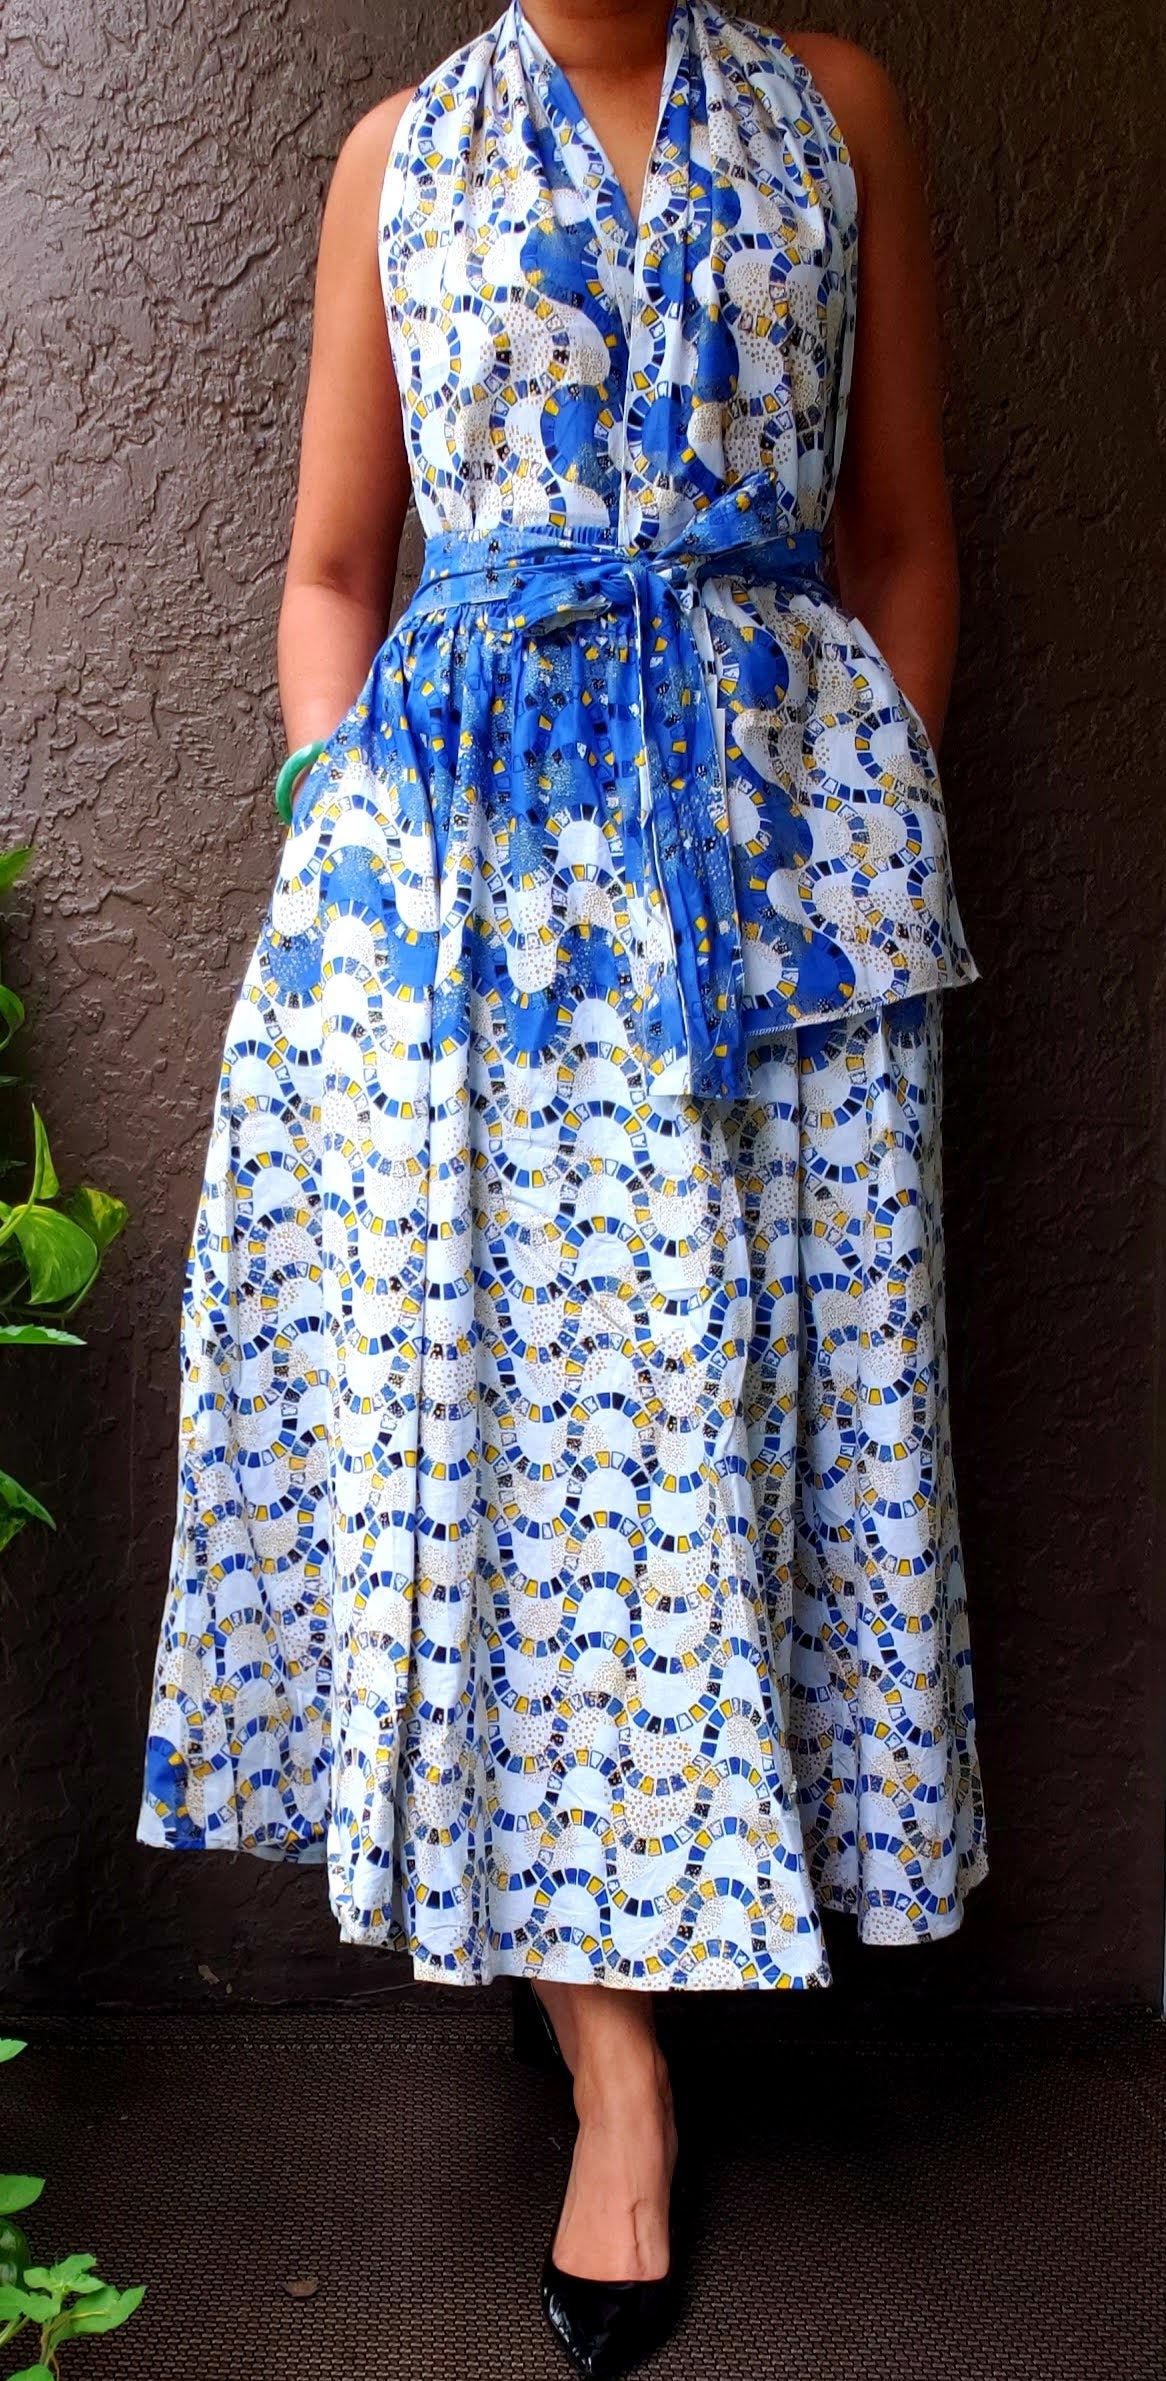 1003 Women Long Printed Skirt - White/Blue